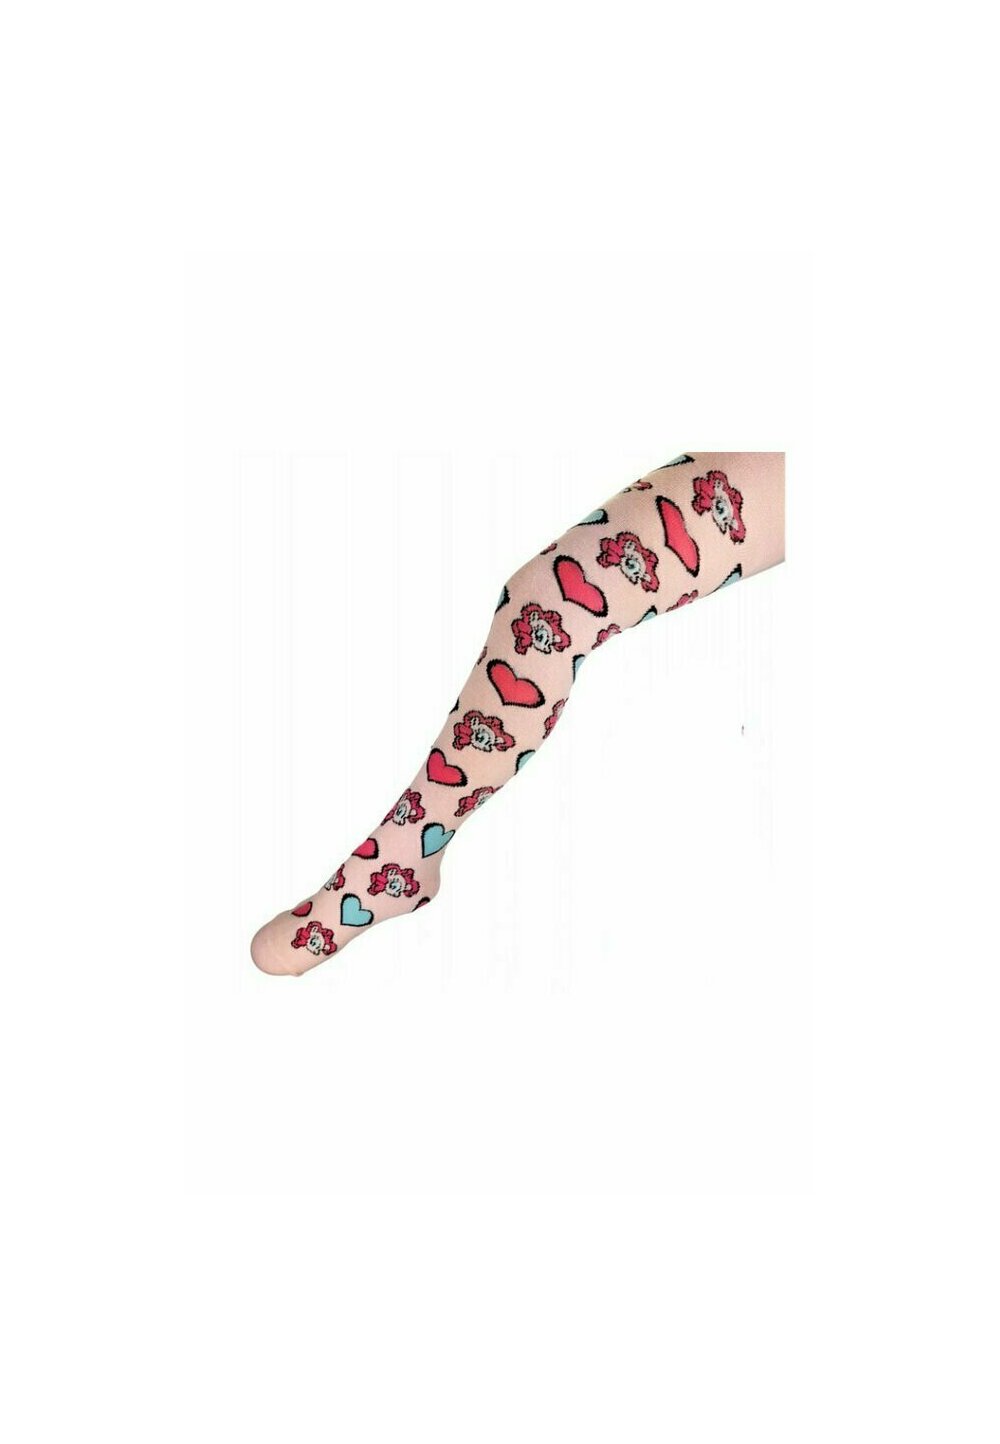 Ciorapi cu chilot, Pinkie Pie, roz cu inimioare imagine